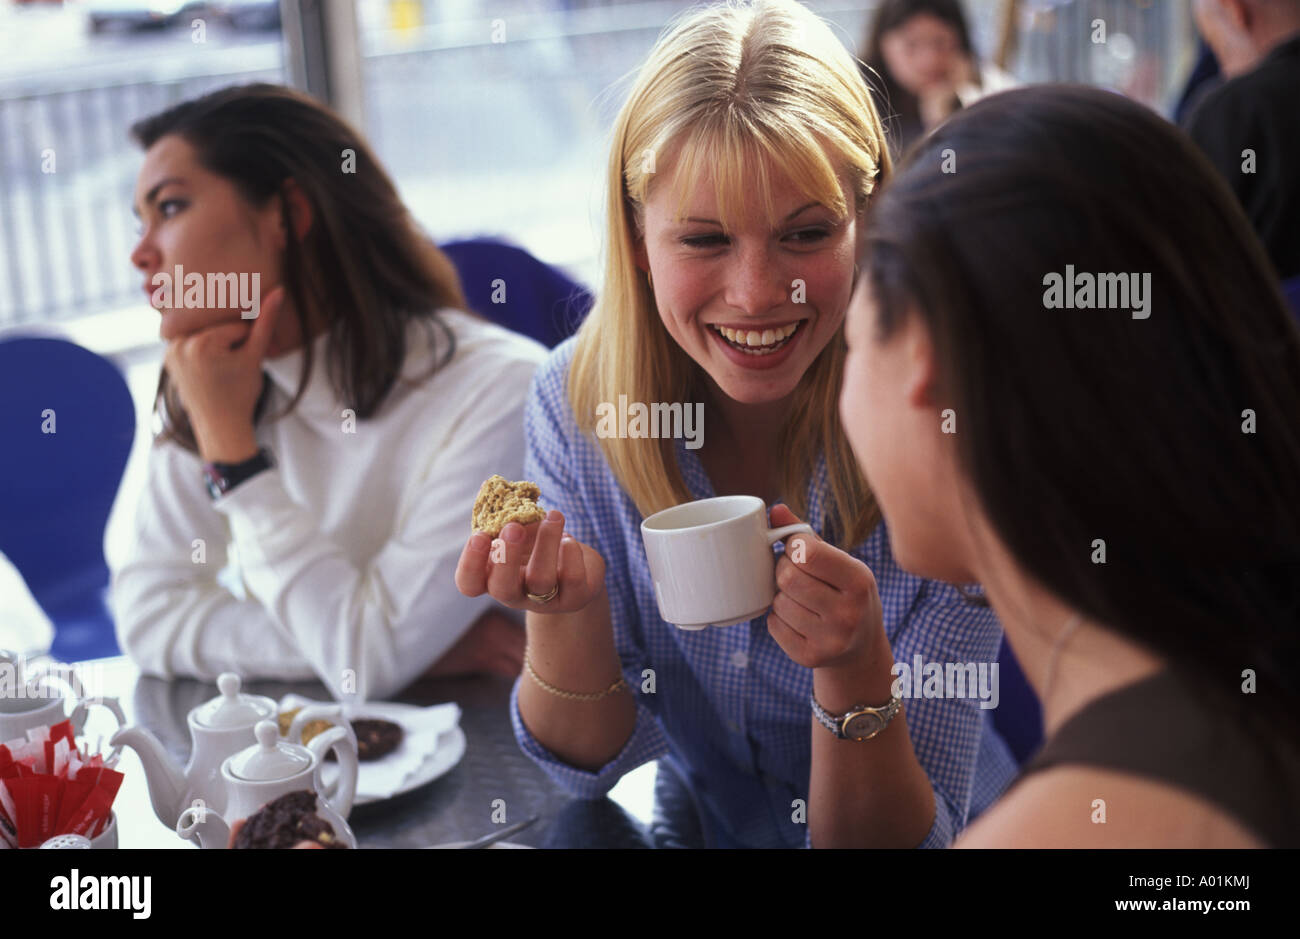 junge Frauen plaudern in einem Café, während ein Freund traurig und allein gelassen sieht Stockfoto